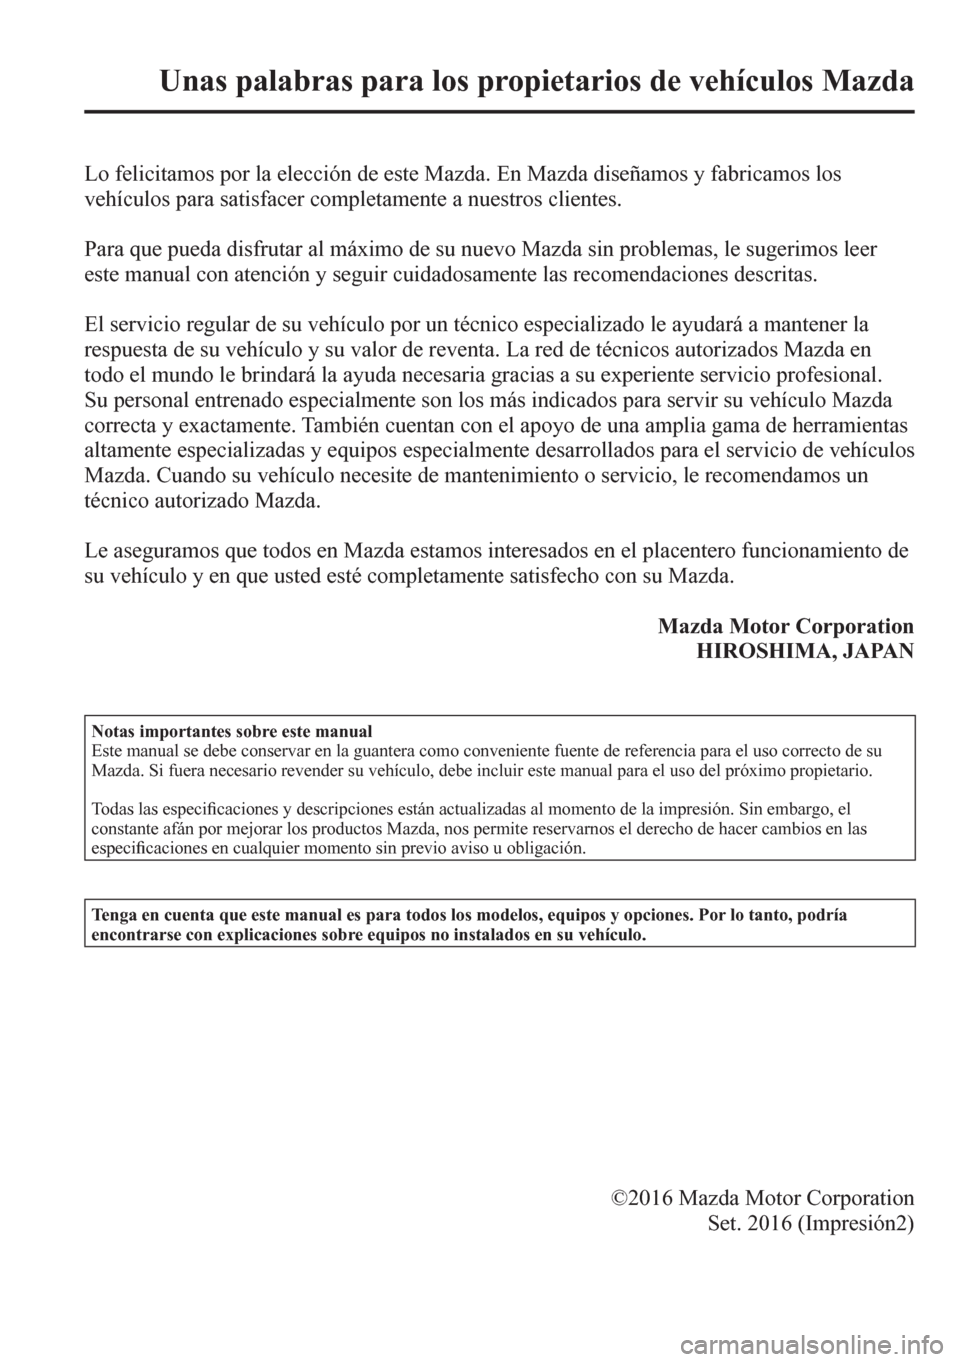 MAZDA MODEL 6 2016  Manual del propietario (in Spanish) Unas palabras para los propietarios de vehículos Mazda 
              L o   f<0048004f004c0046004c0057004400500052005600030053005200550003004f004400030048004f004800460046004c0079005100030047004800030